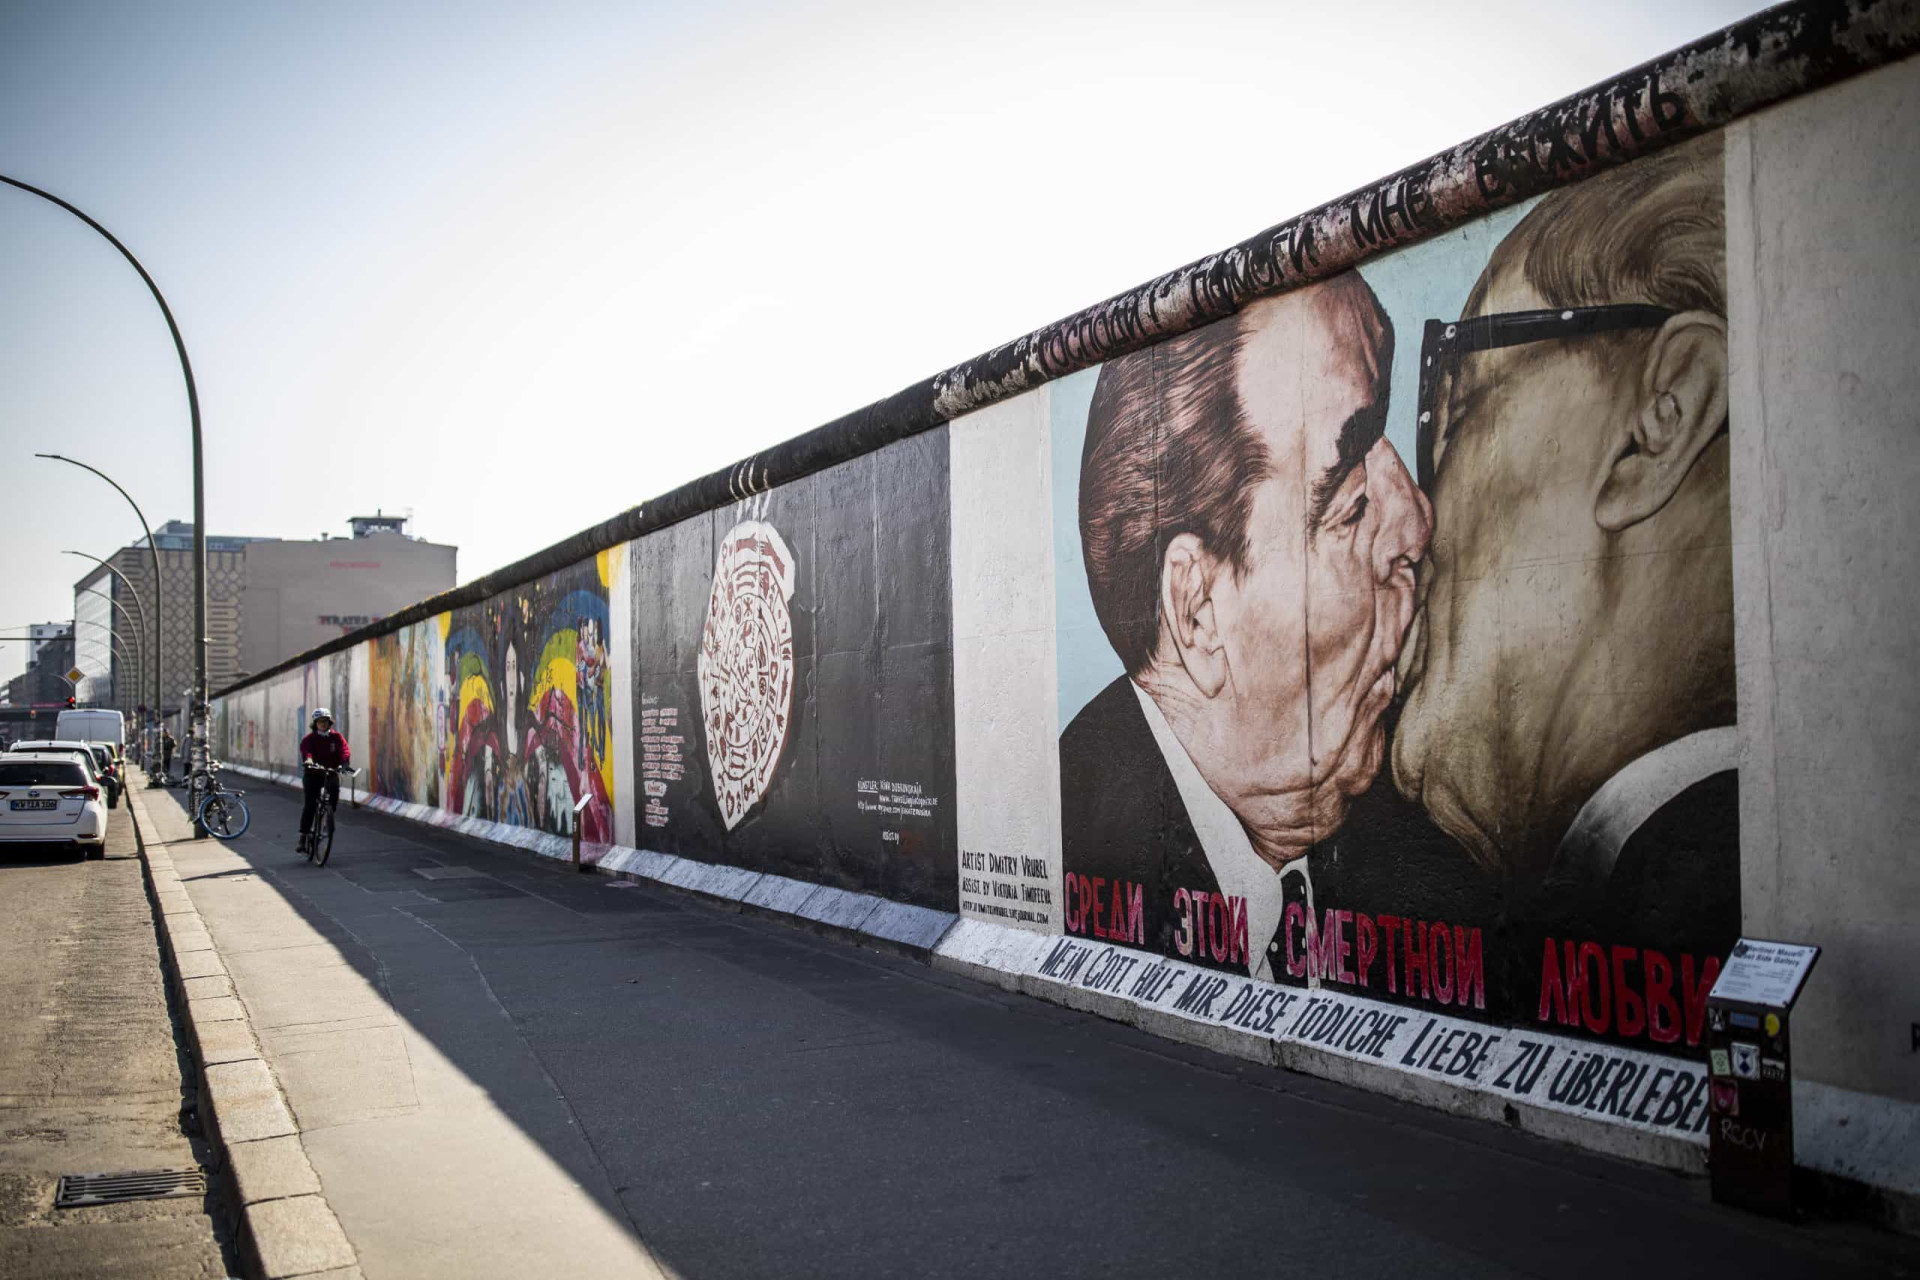 <p>Si vous êtes un(e) adepte de street art, vous devez absolument vous rendre à cette galerie à ciel ouvert. Vous pourrez y admirer une série de fresques murales sur 1 316 mètres de ce qu'il reste du mur de Berlin. </p><p><a href="https://www.msn.com/fr-fr/community/channel/vid-7xx8mnucu55yw63we9va2gwr7uihbxwc68fxqp25x6tg4ftibpra?cvid=94631541bc0f4f89bfd59158d696ad7e">Suivez-nous et accédez tous les jours à du contenu exclusif</a></p>